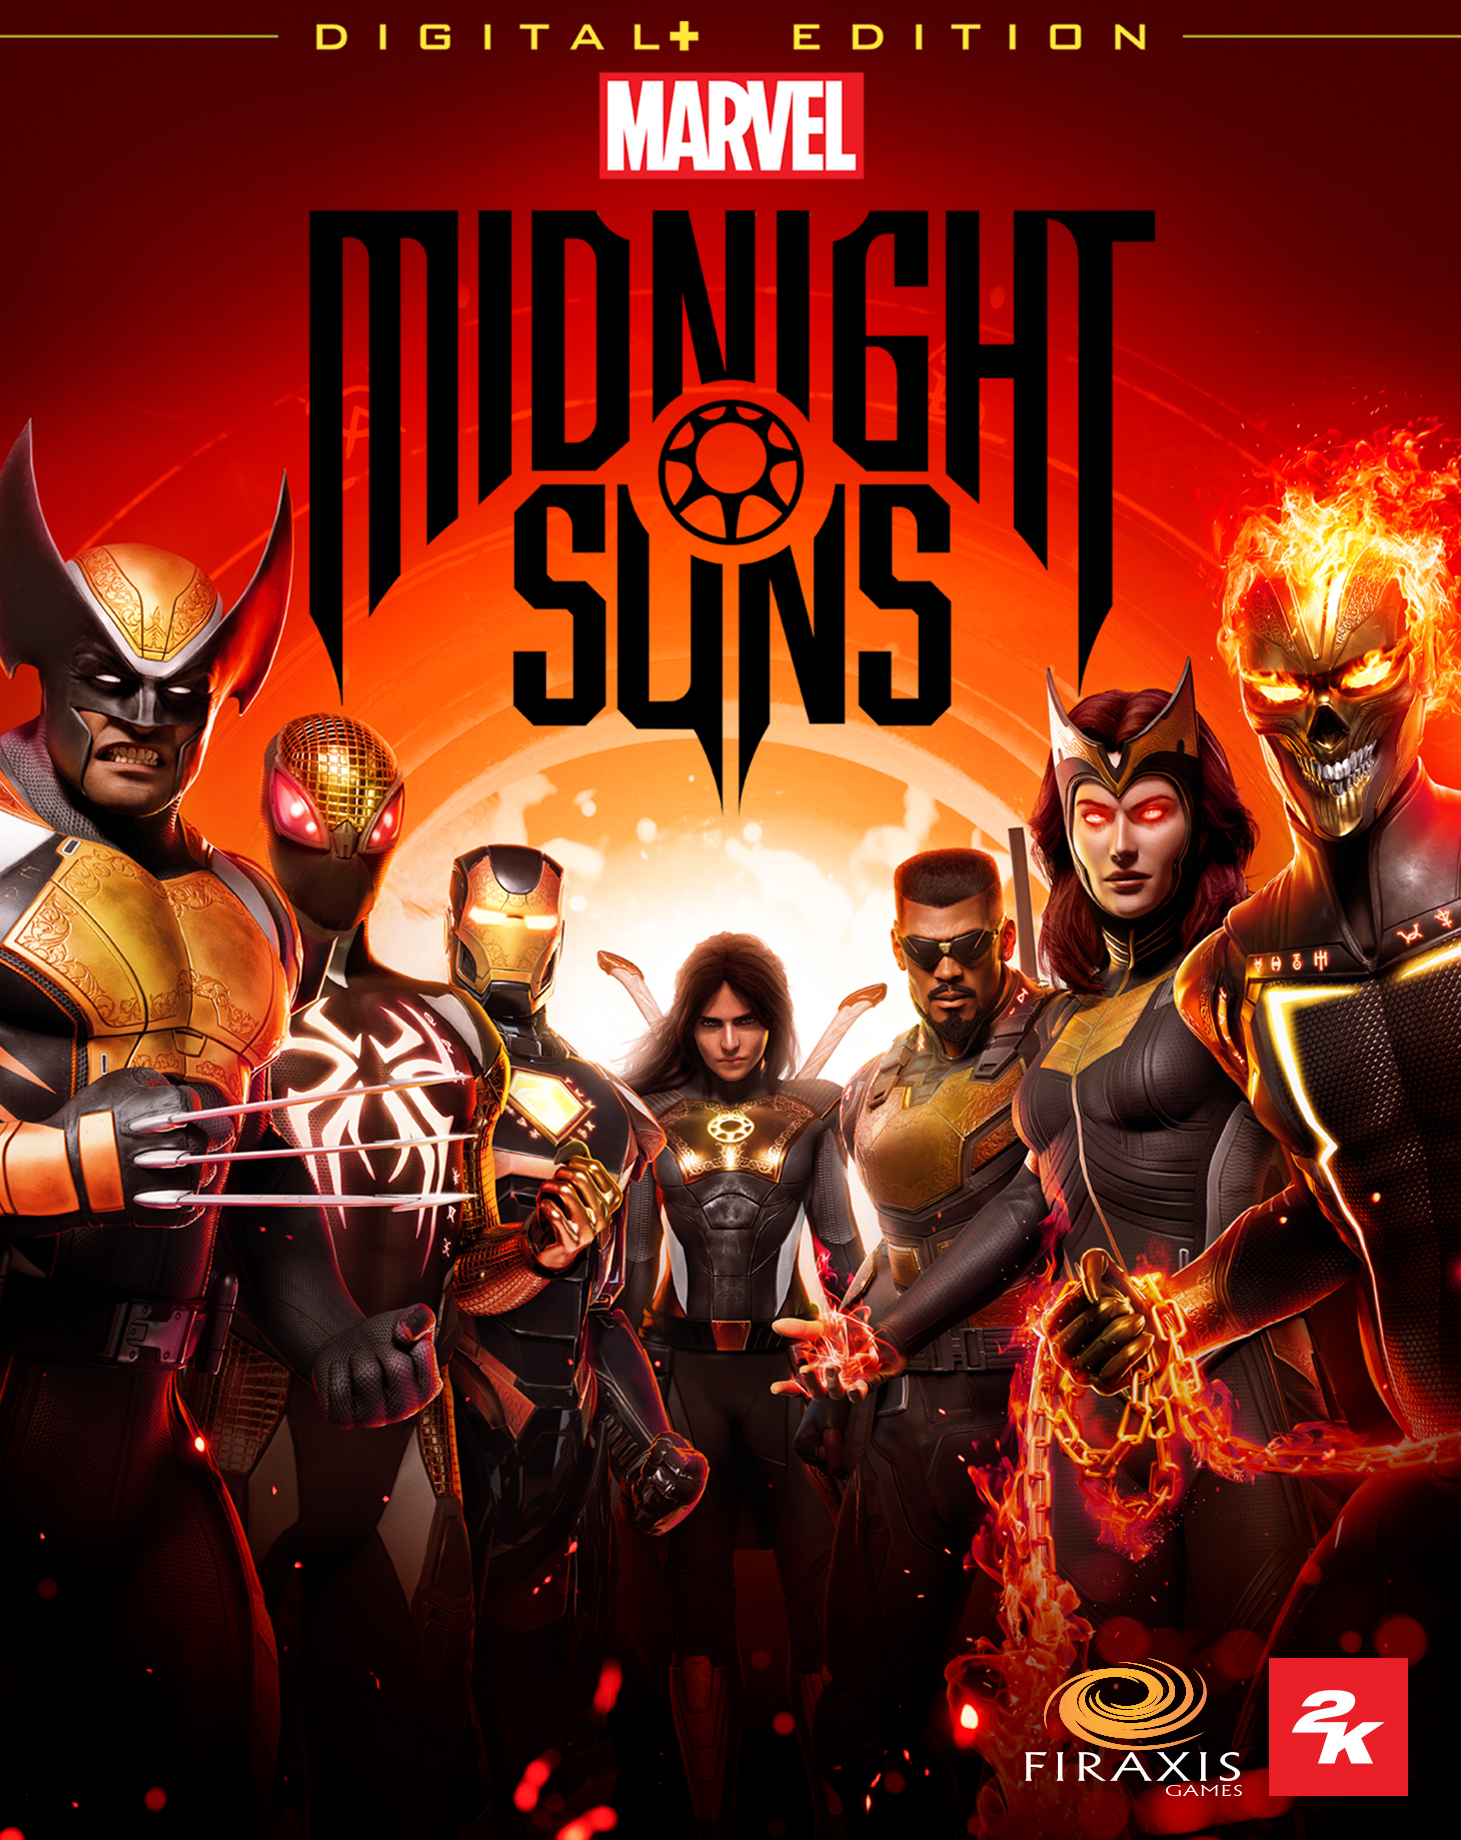 Marvel's Midnight Suns Digital+ Edition (Steam)